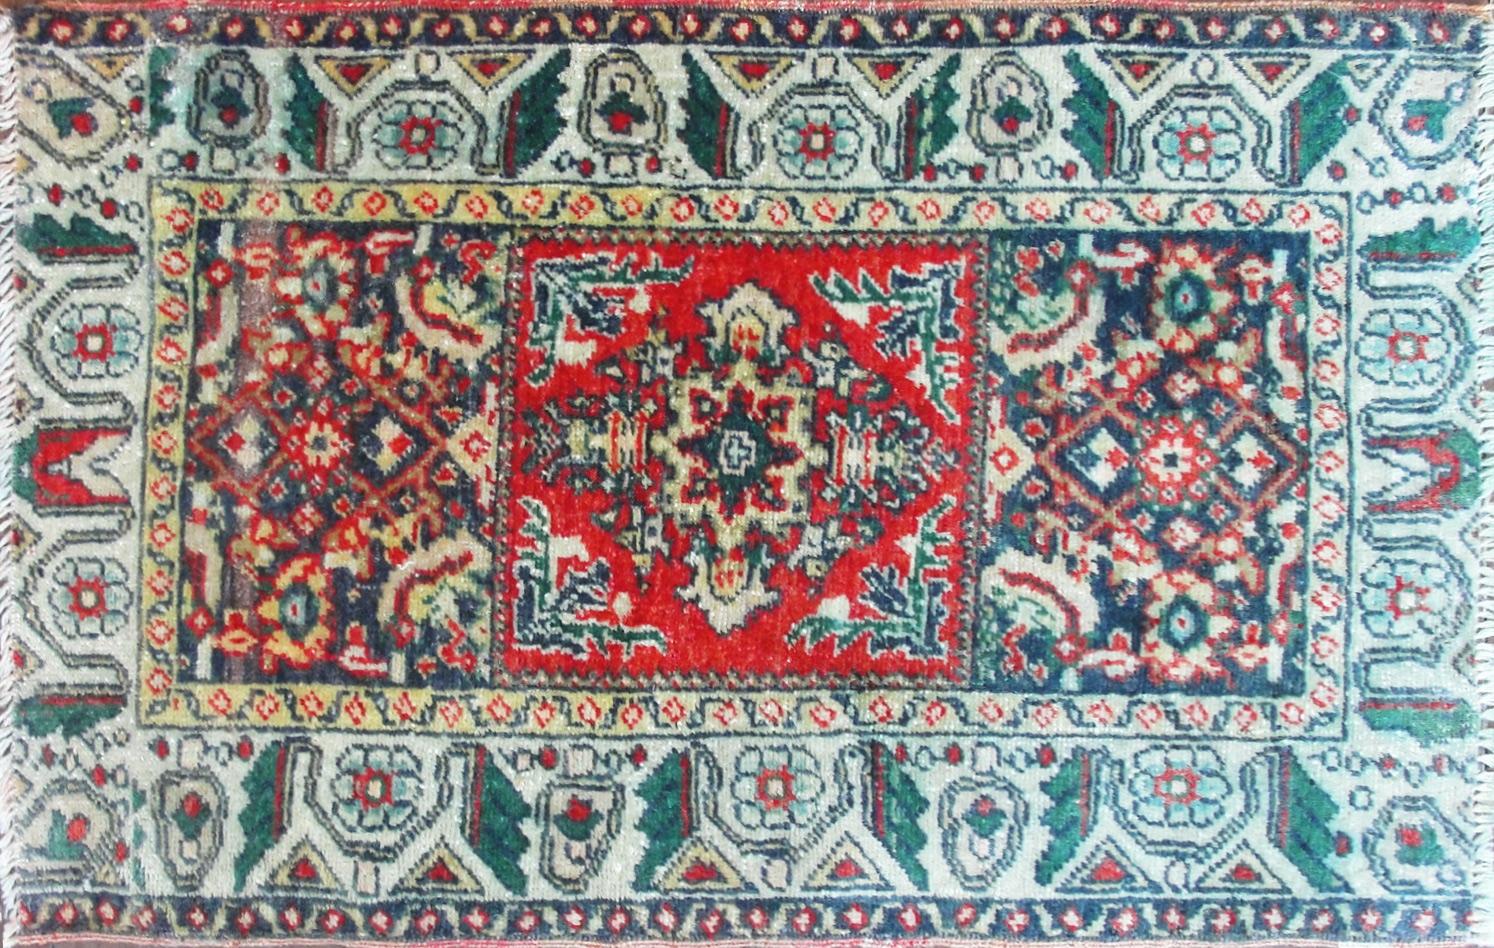 Yastik oder Kissen oder Bloster Abdeckung, Obwohl es nicht perfekt ist, aber schöne unverwechselbare anatolischen Motiven und weiche Farbe, zeigt drei Teppiche Design von geometrischen Form umgeben. Je weiter wir mit der Beschreibung fortfahren,